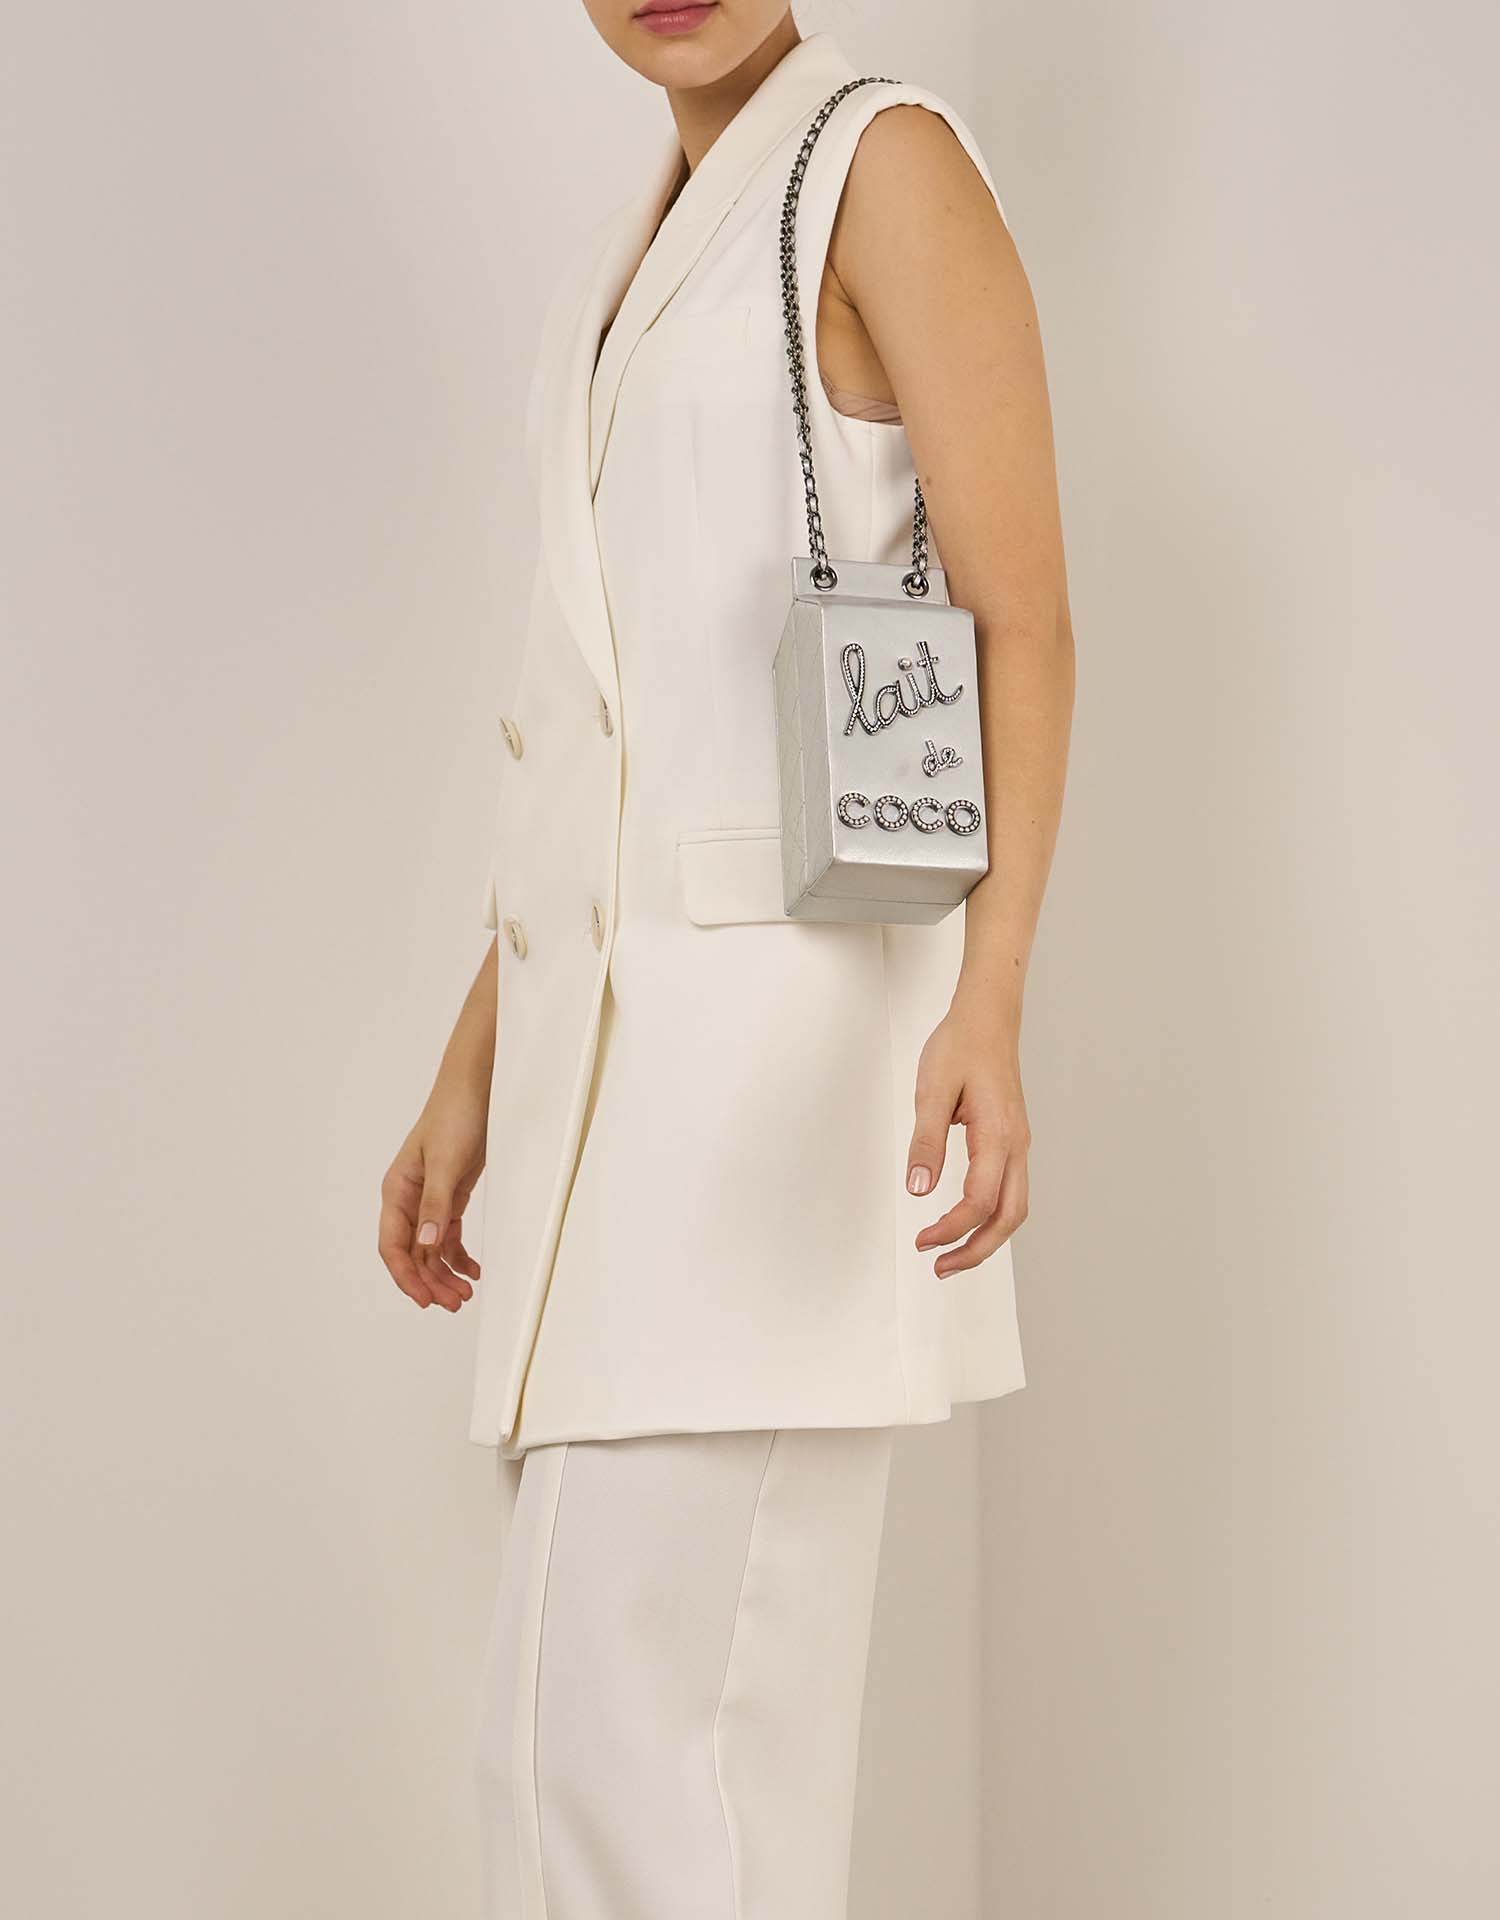 Chanel MilkCarton Silber auf Model | Verkaufen Sie Ihre Designer-Tasche auf Saclab.com